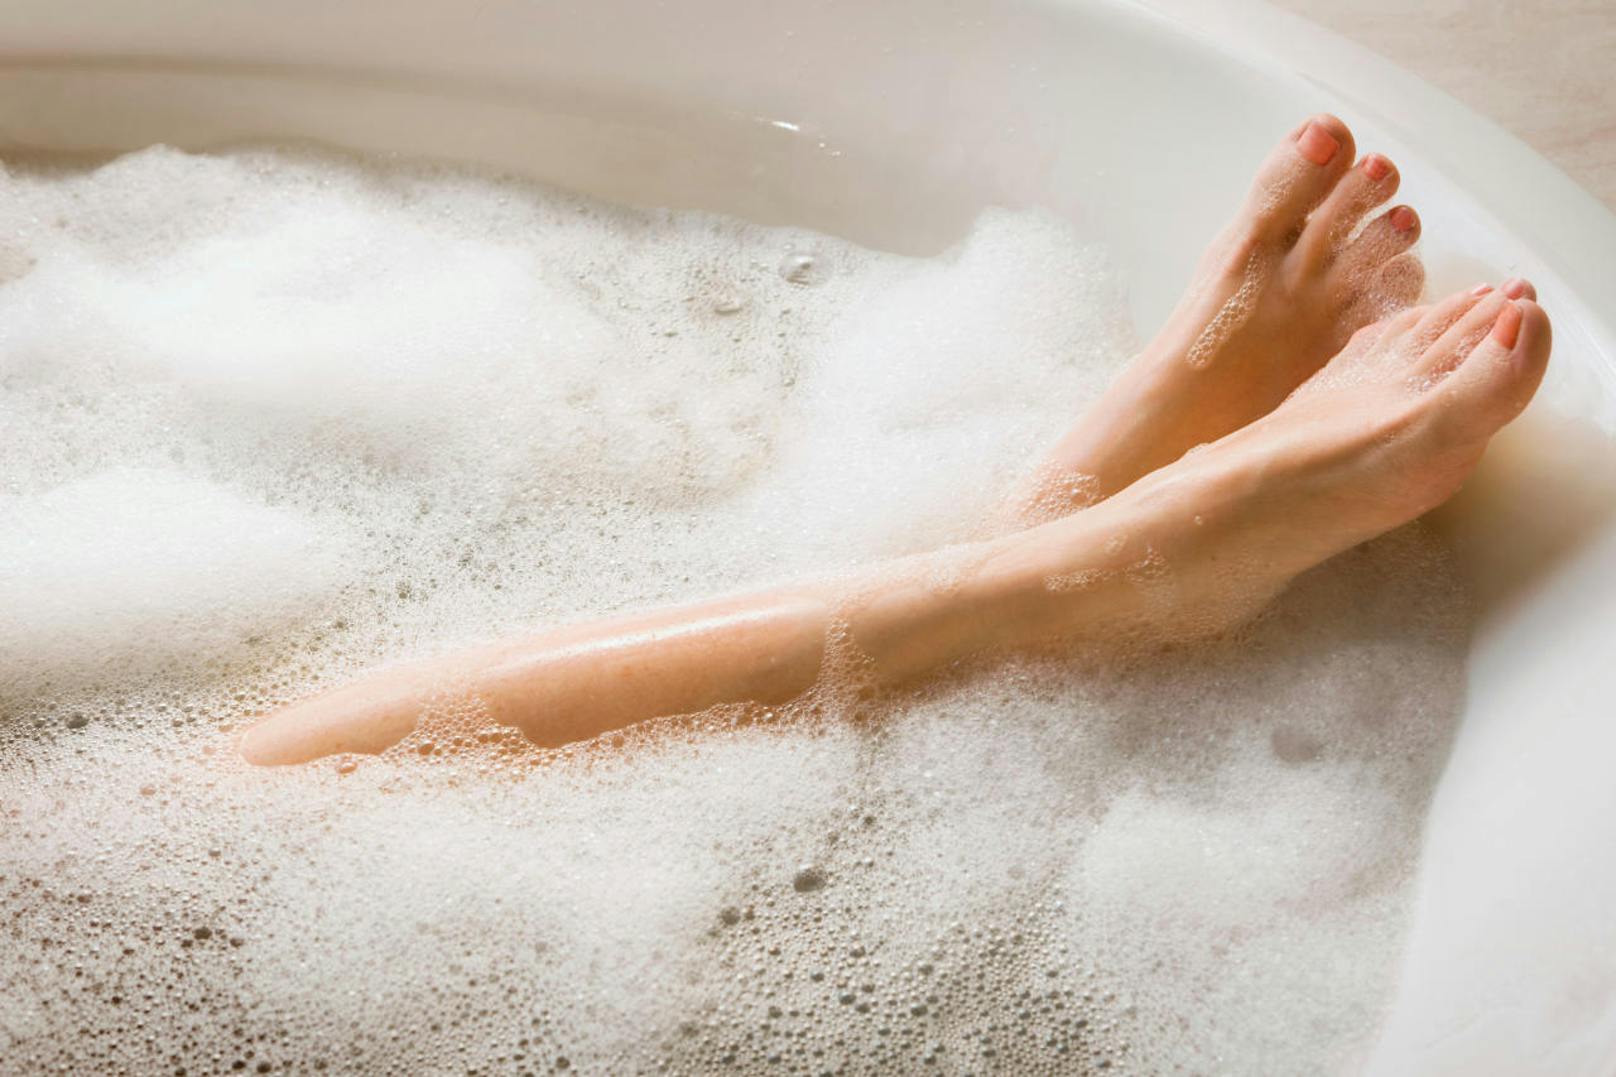 <b>15. Auch mit Intim-Duschgels sollte man vorsichtig umgehen.</b> Denn wer übertriebene Intimhygiene betreibt, beschädigt den Säureschutzmantel von Haut und Genitalbereich. Dadurch haben Bakterien leichtes Spiel und können schneller in den Körper gelangen.